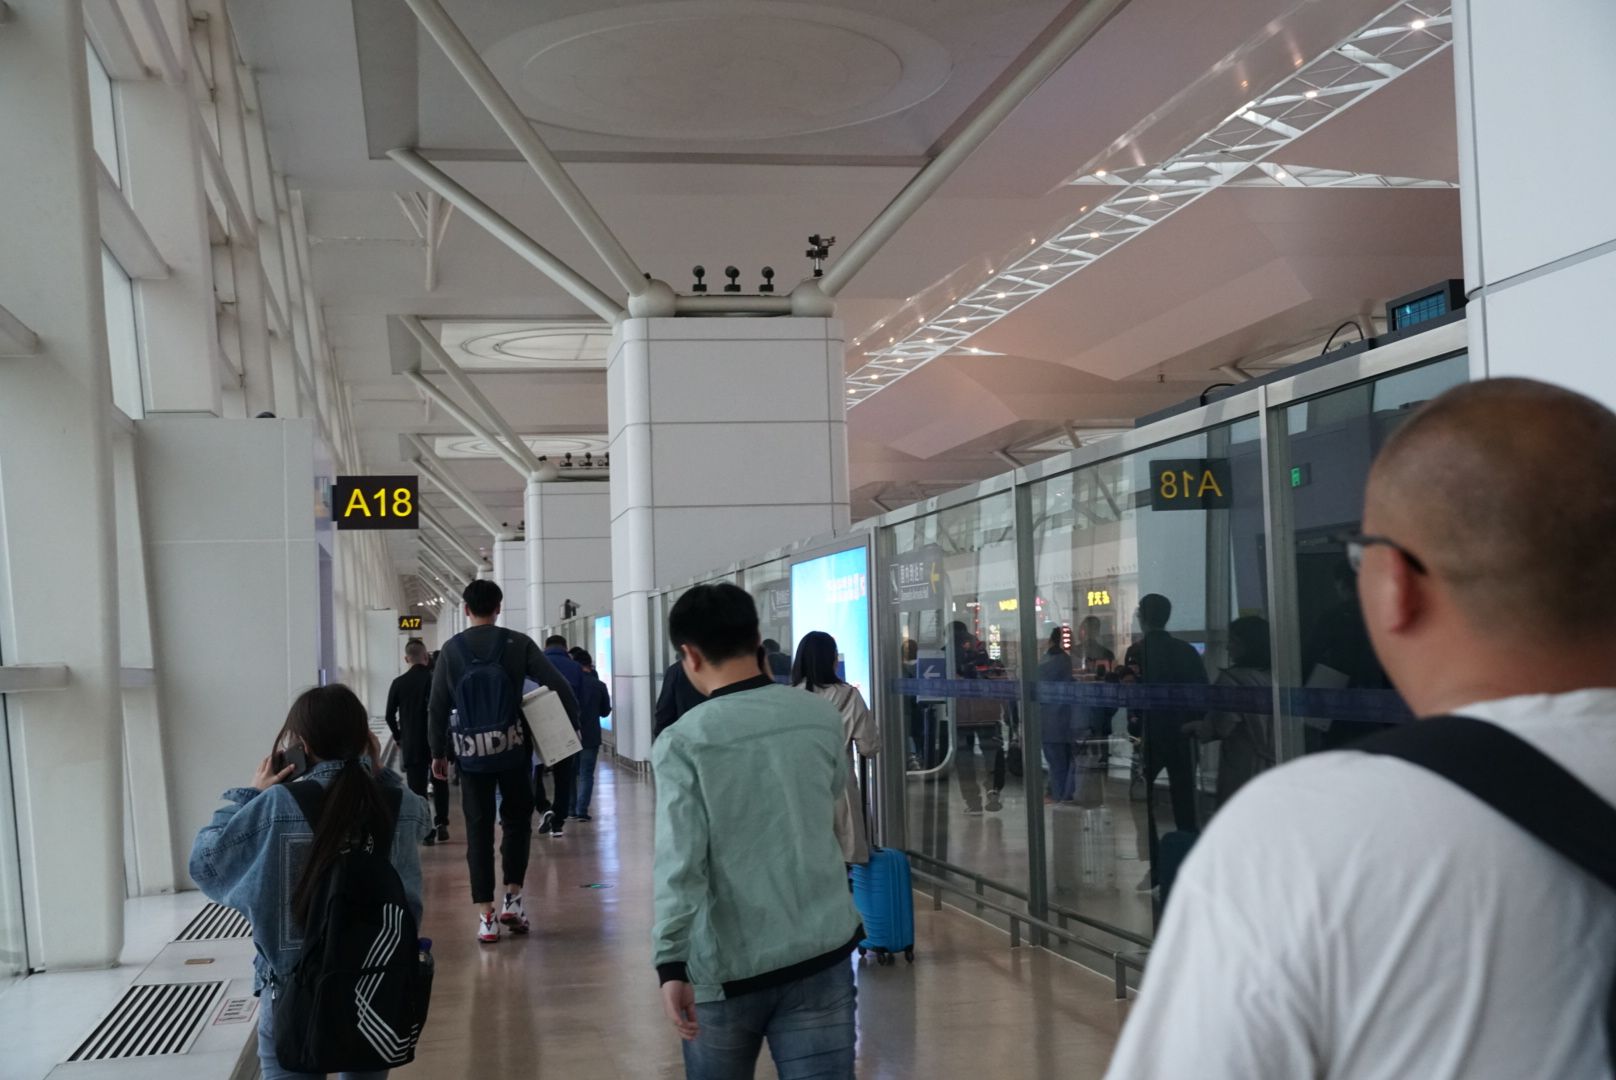 【携程攻略】蓬莱国际机场怎么样/怎么去,蓬莱国际机场用户点评/评价